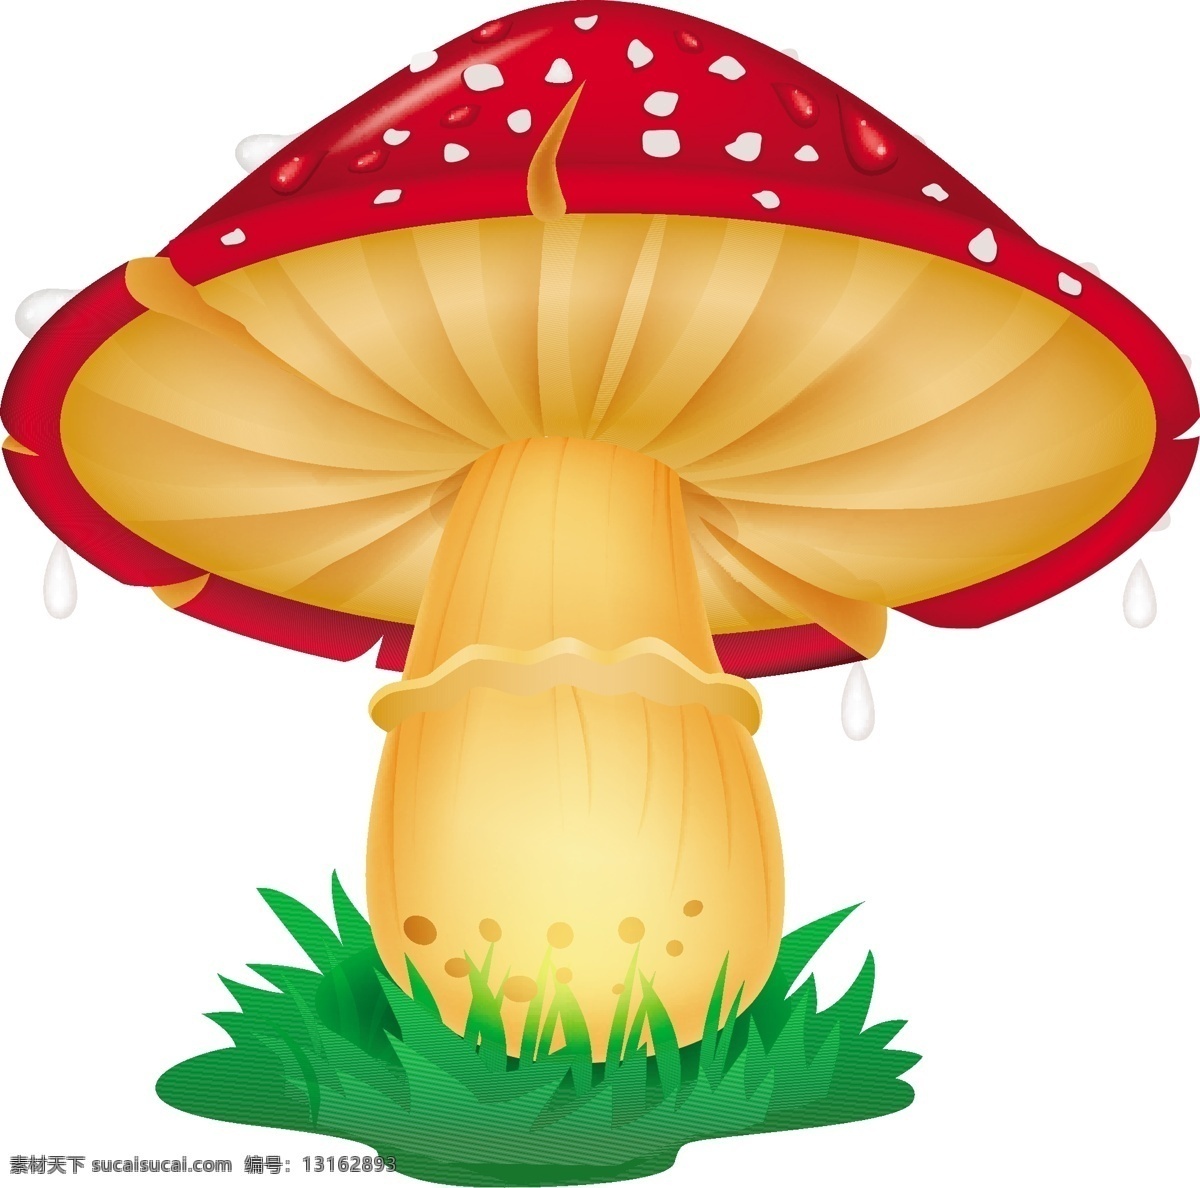 蘑菇设计 矢量蘑菇 蘑菇素材 卡通蘑菇 菌子 菌 卡通菌 矢量菌 矢量菌子